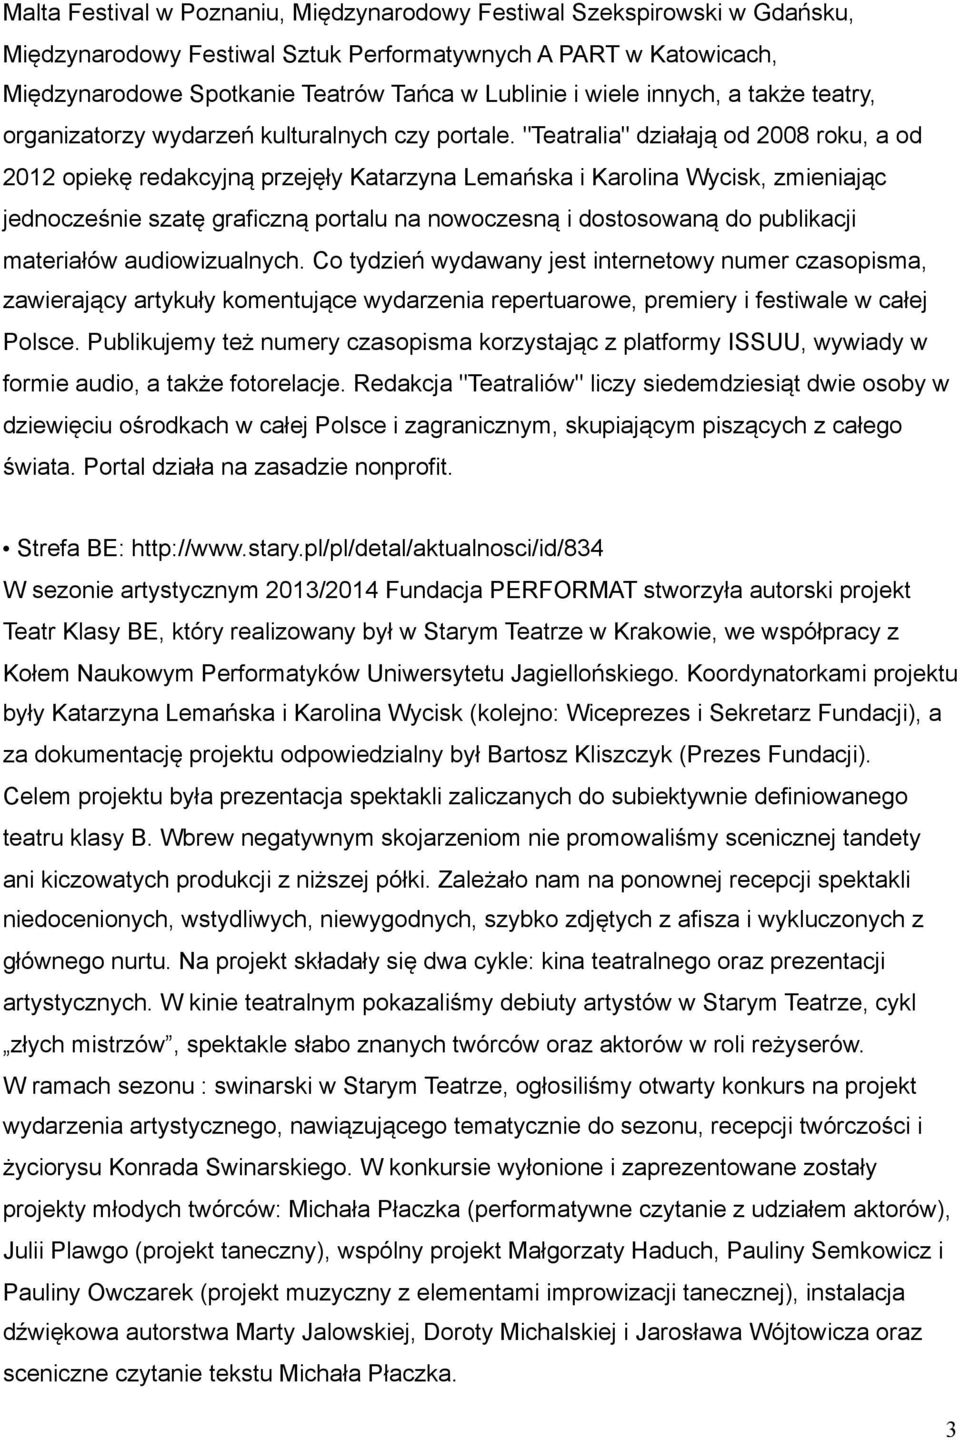 "Teatralia" działają od 2008 roku, a od 2012 opiekę redakcyjną przejęły Katarzyna Lemańska i Karolina Wycisk, zmieniając jednocześnie szatę graficzną portalu na nowoczesną i dostosowaną do publikacji